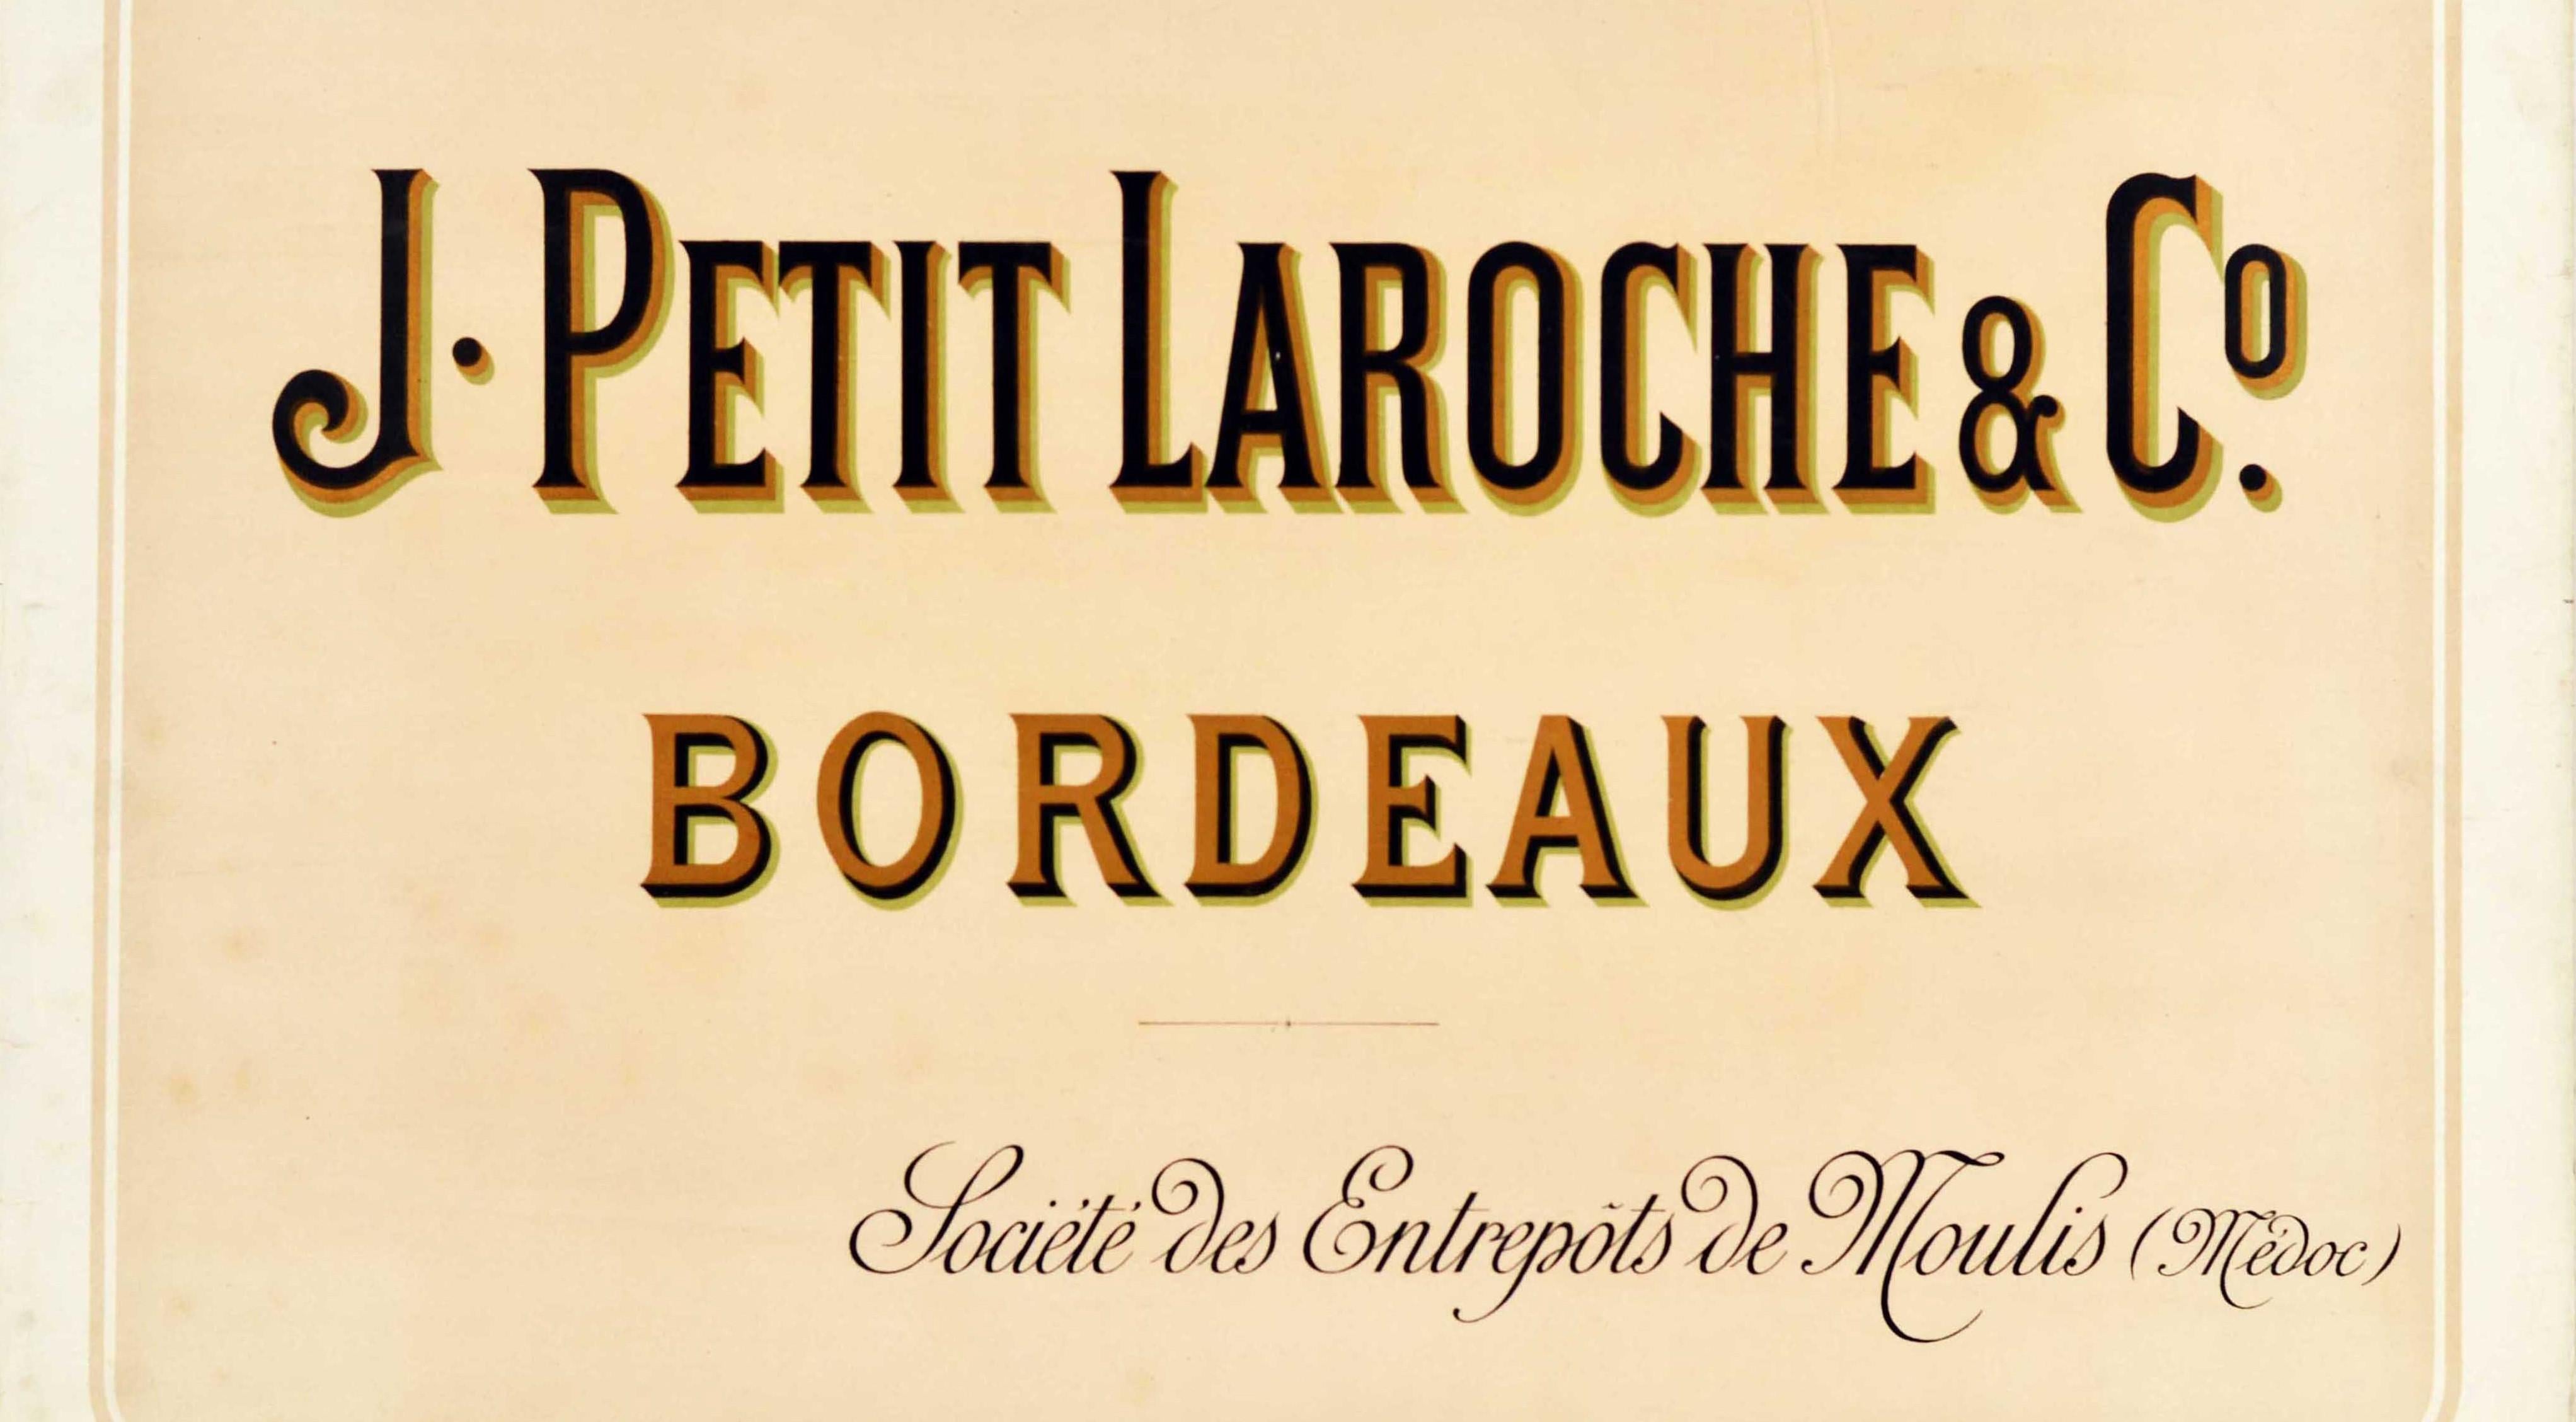 Antikes Getränkeplakat, J. Petit Laroche & Co, Bordeaux, Wein, Frankreich, Medoc – Print von Unknown